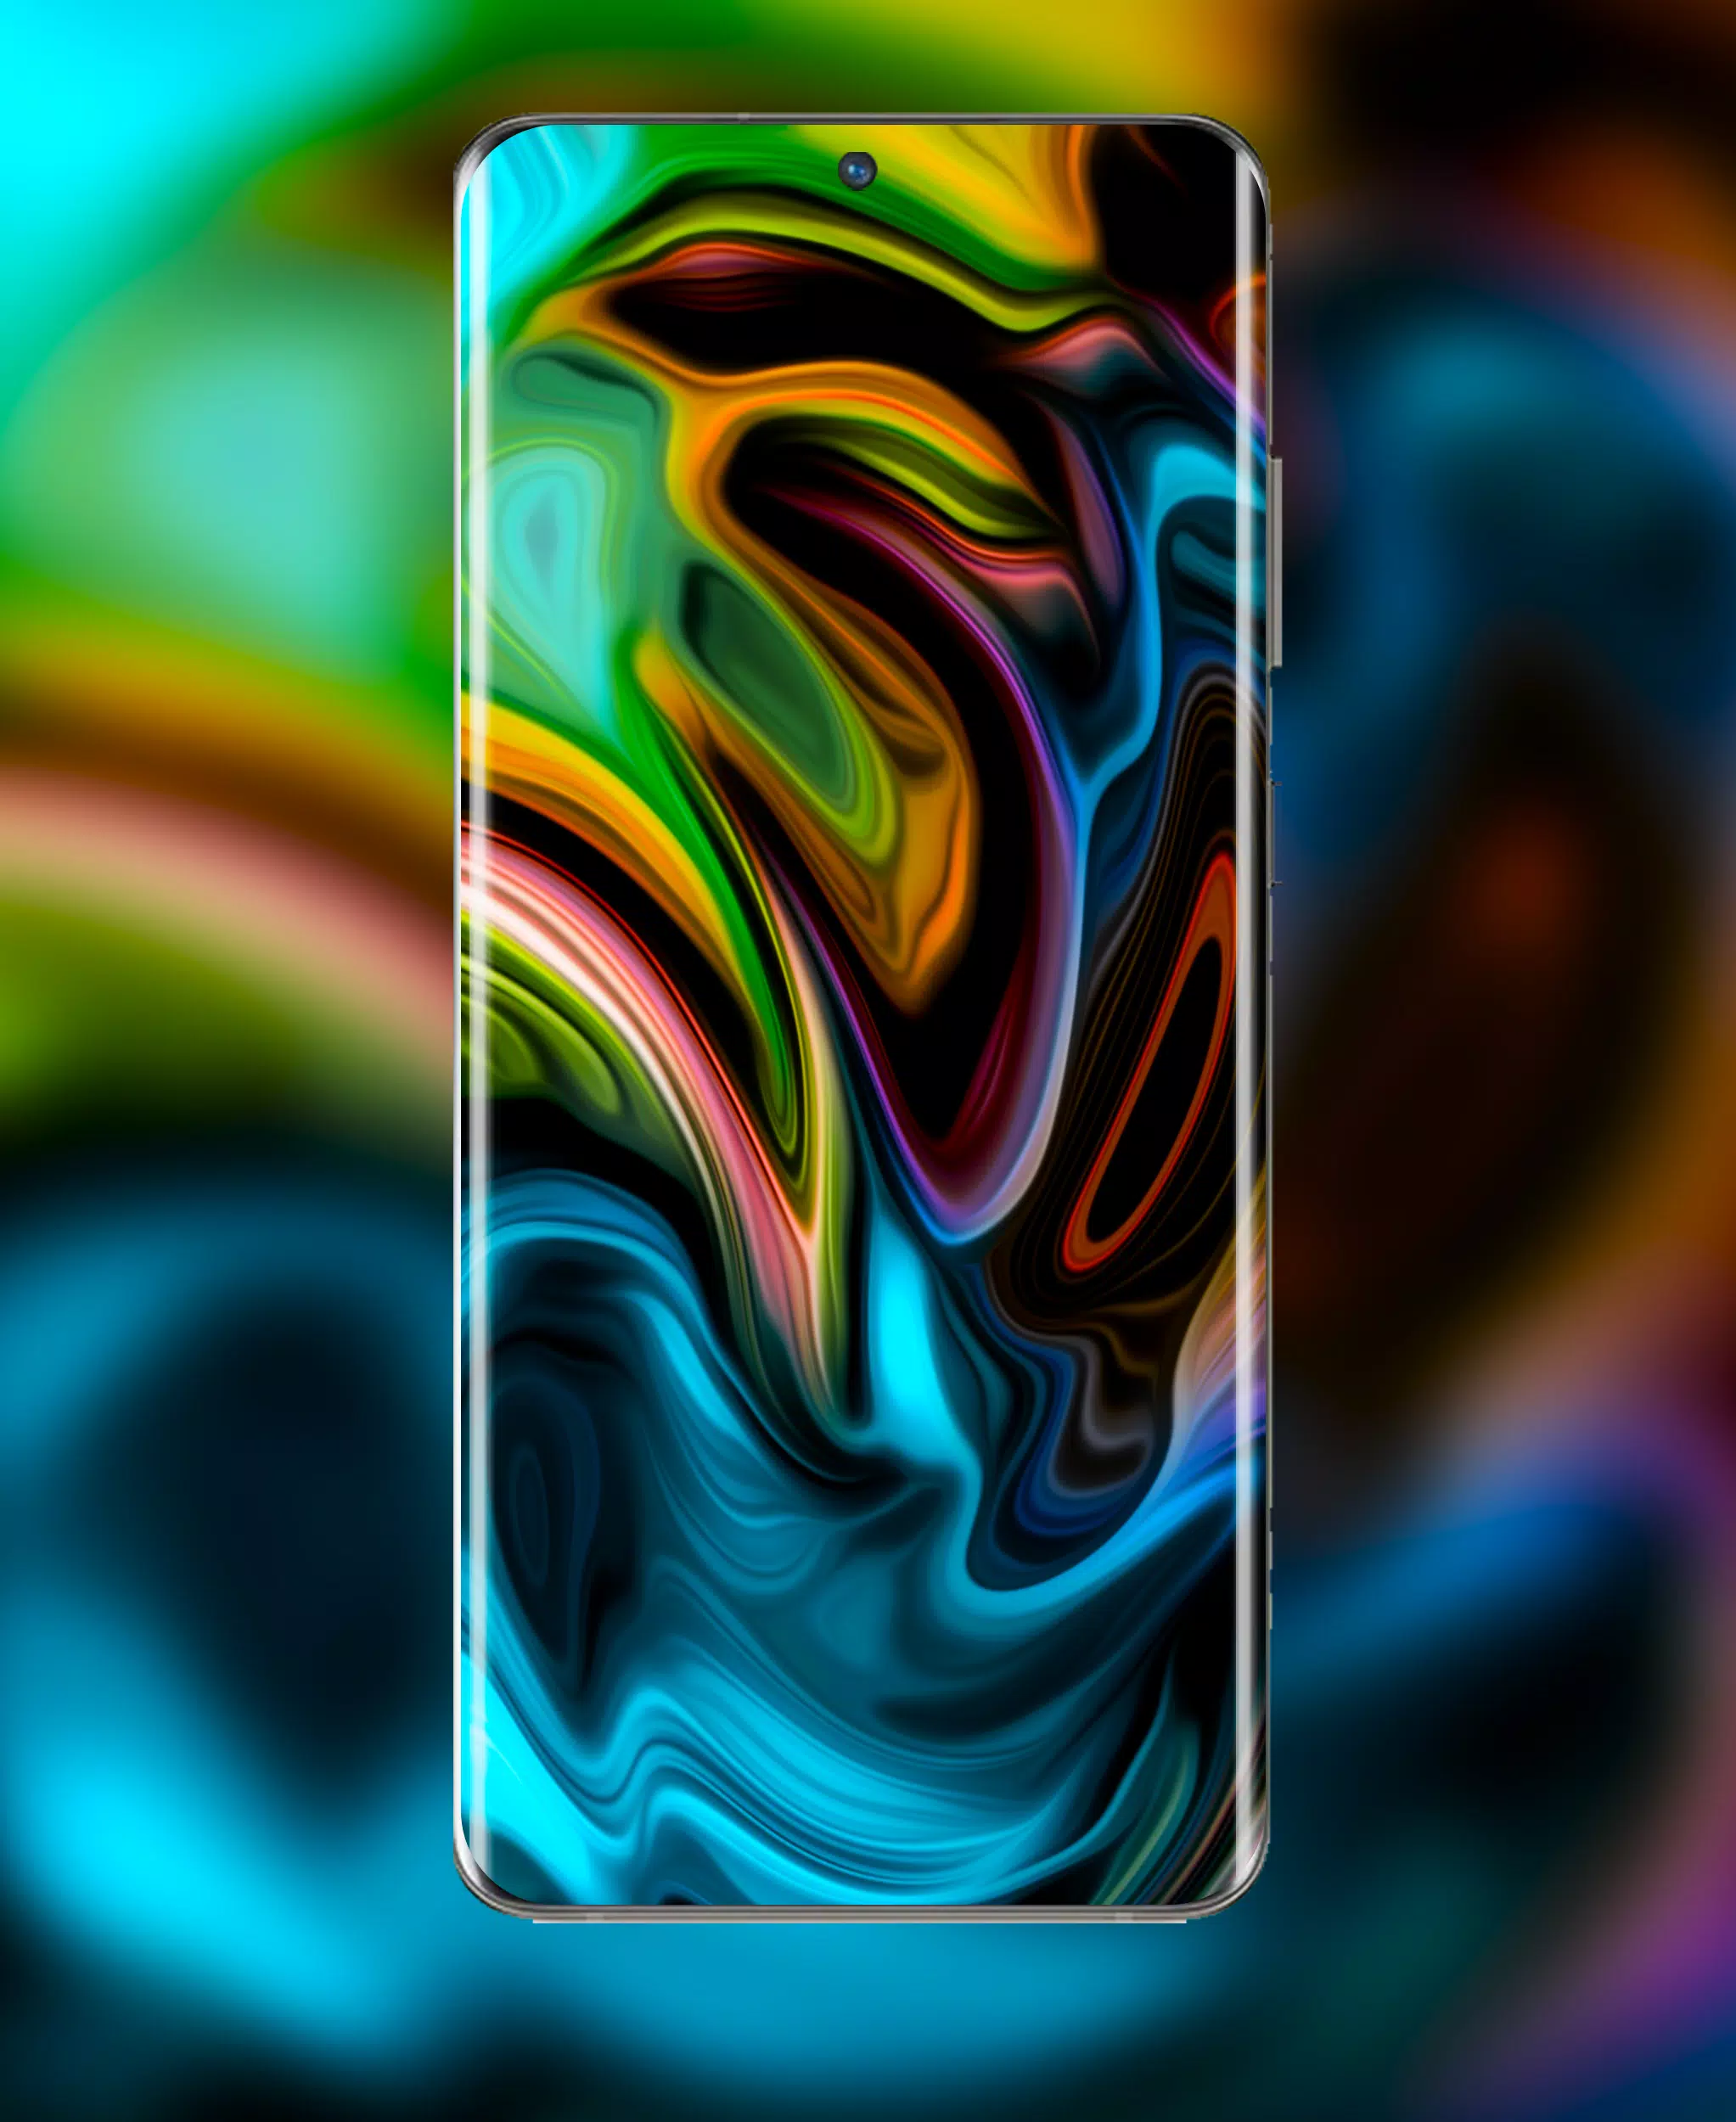 Muốn có hình nền độc đáo cho chiếc Galaxy S22 của mình? Tải về ngay Galaxy S22 Ultra Wallpaper APK và khám phá những bức ảnh tuyệt đẹp! Chắc chắn bạn sẽ thích mênh mông!